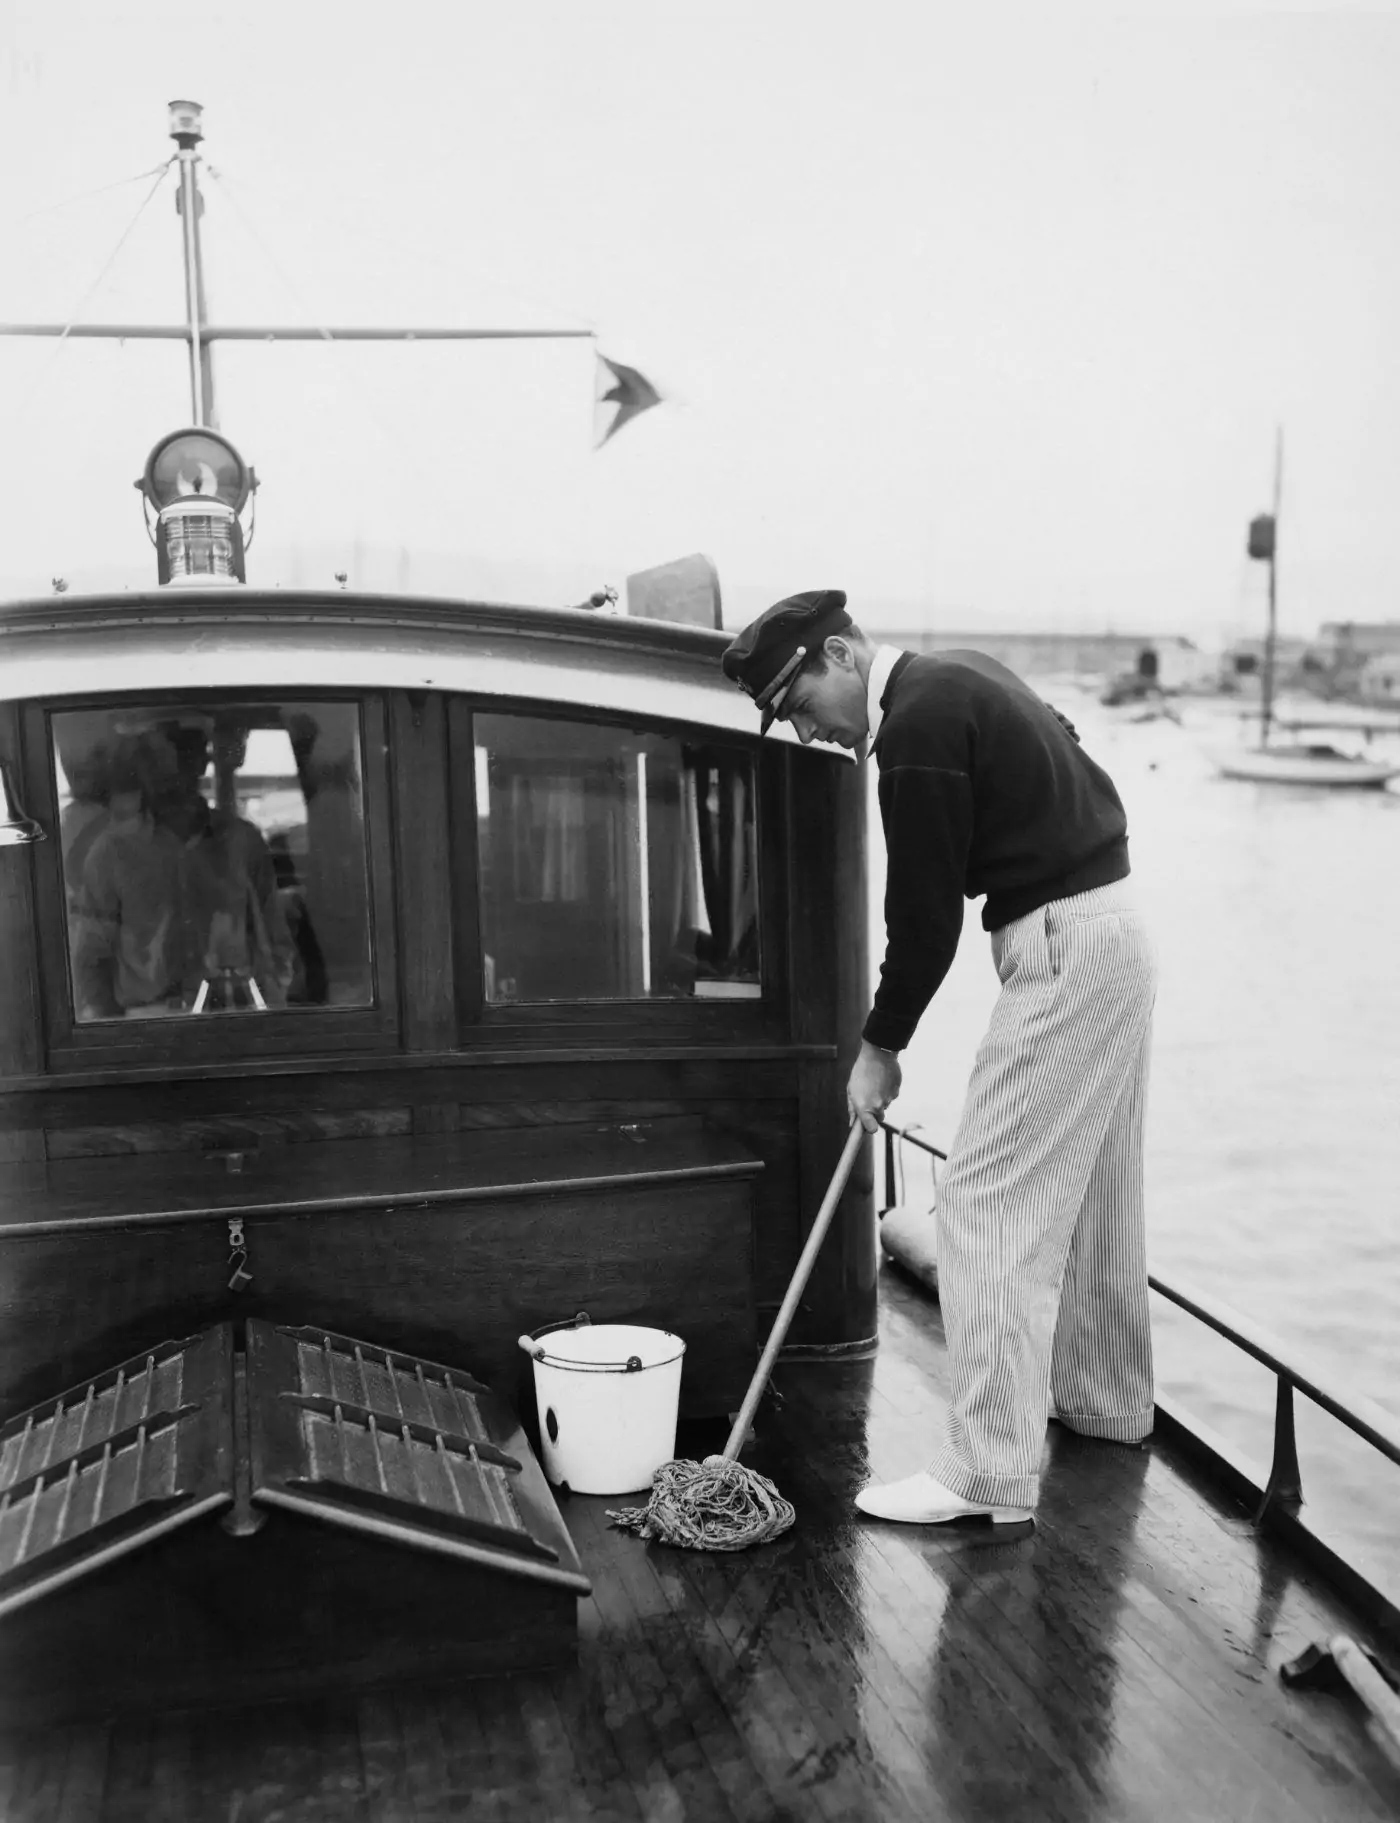 Ein Mann reinigt ein Boot mit einem Eimer.